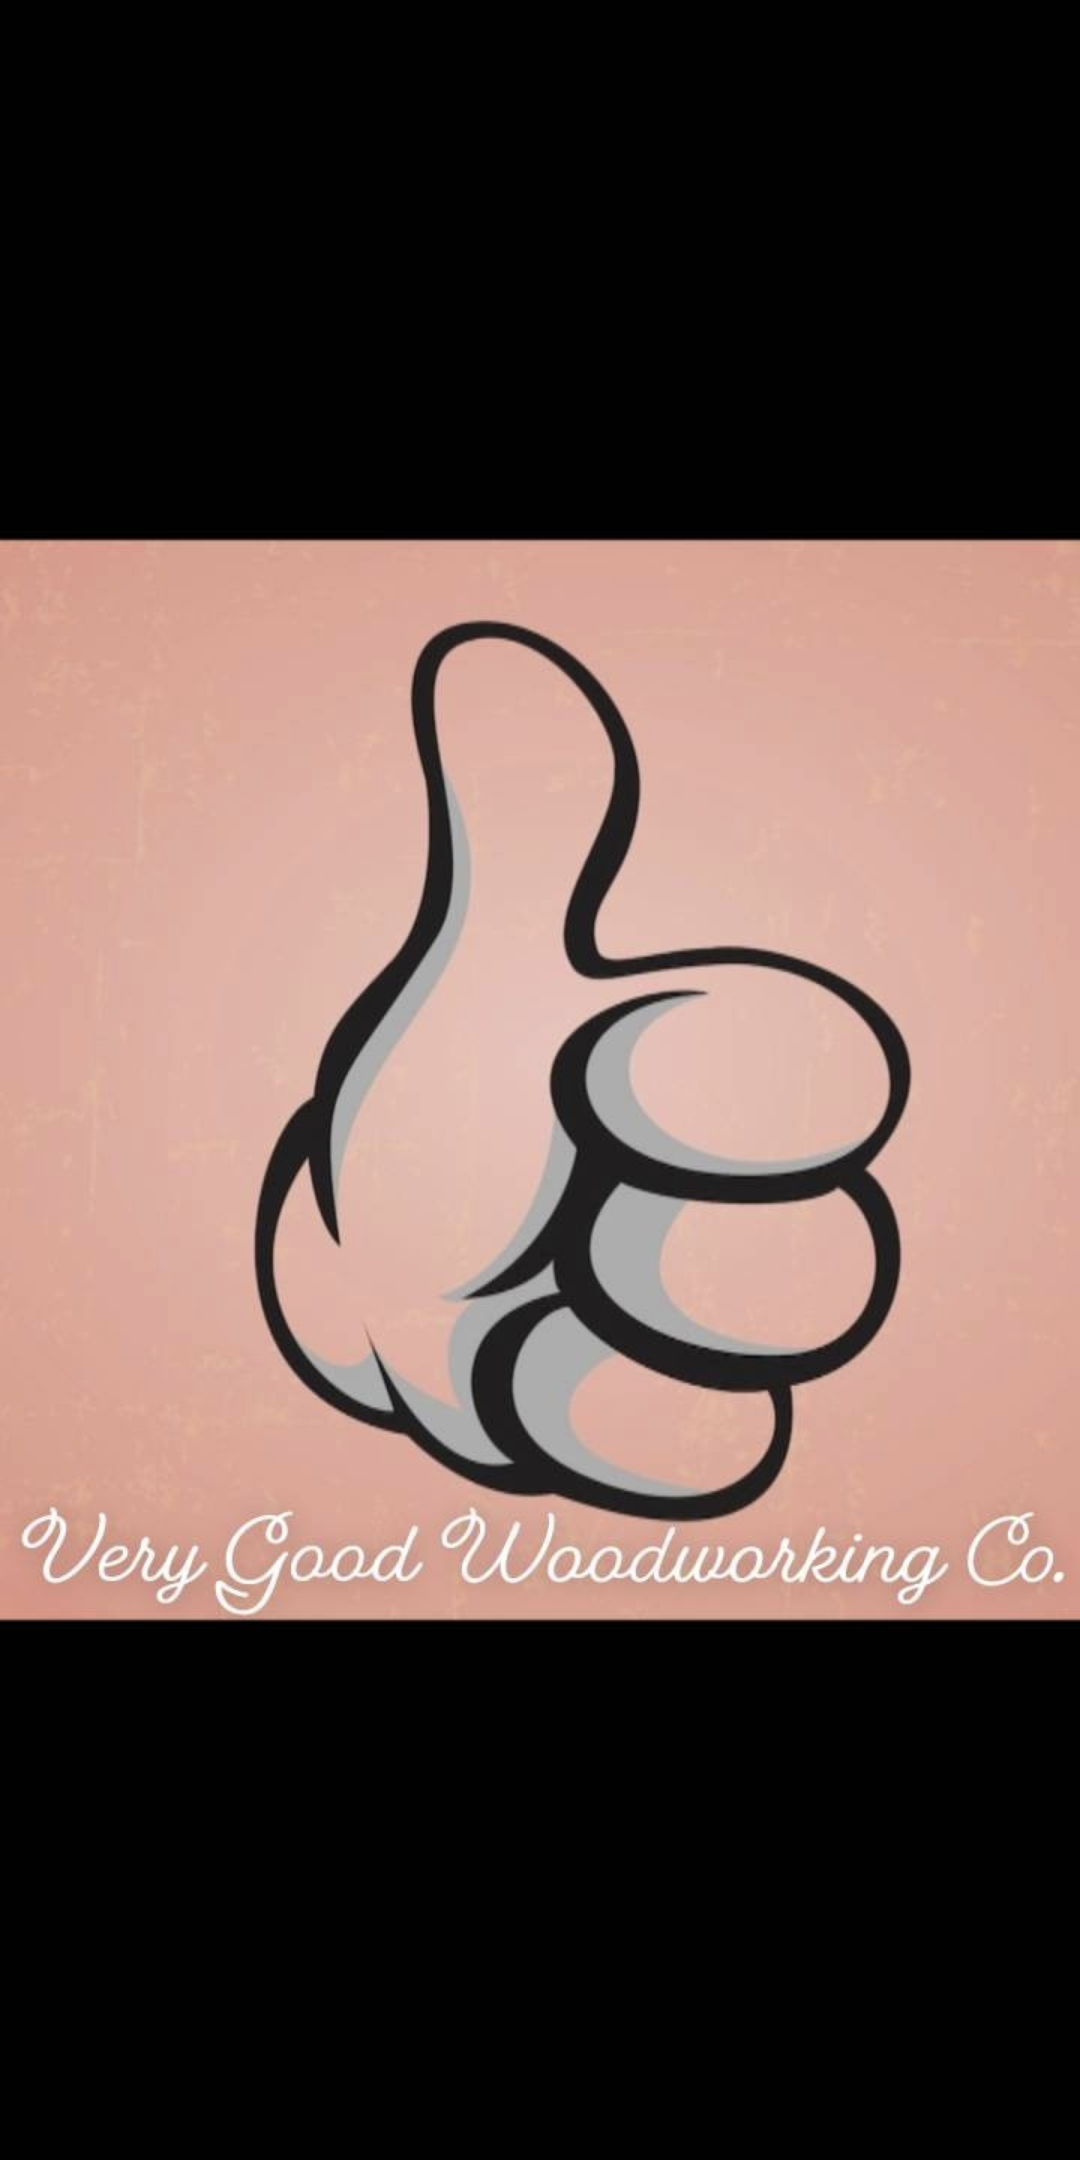 Very Good Woodworking - Unlicensed Contractor Logo